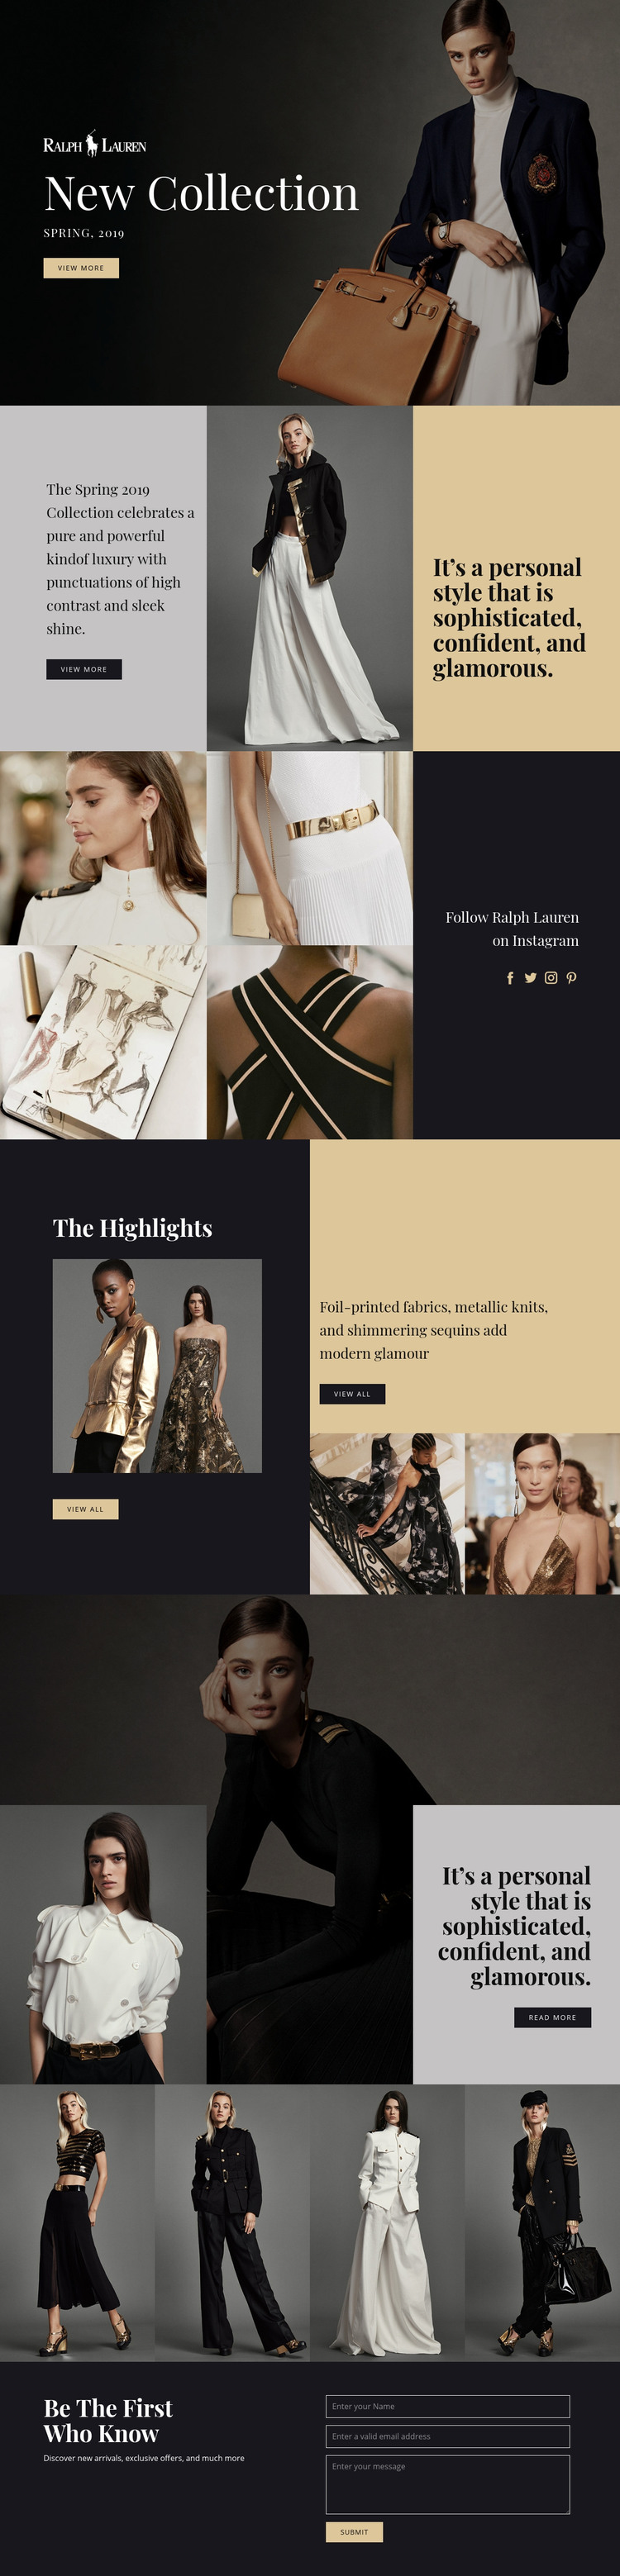 Ralph Lauren fashion Homepage Design